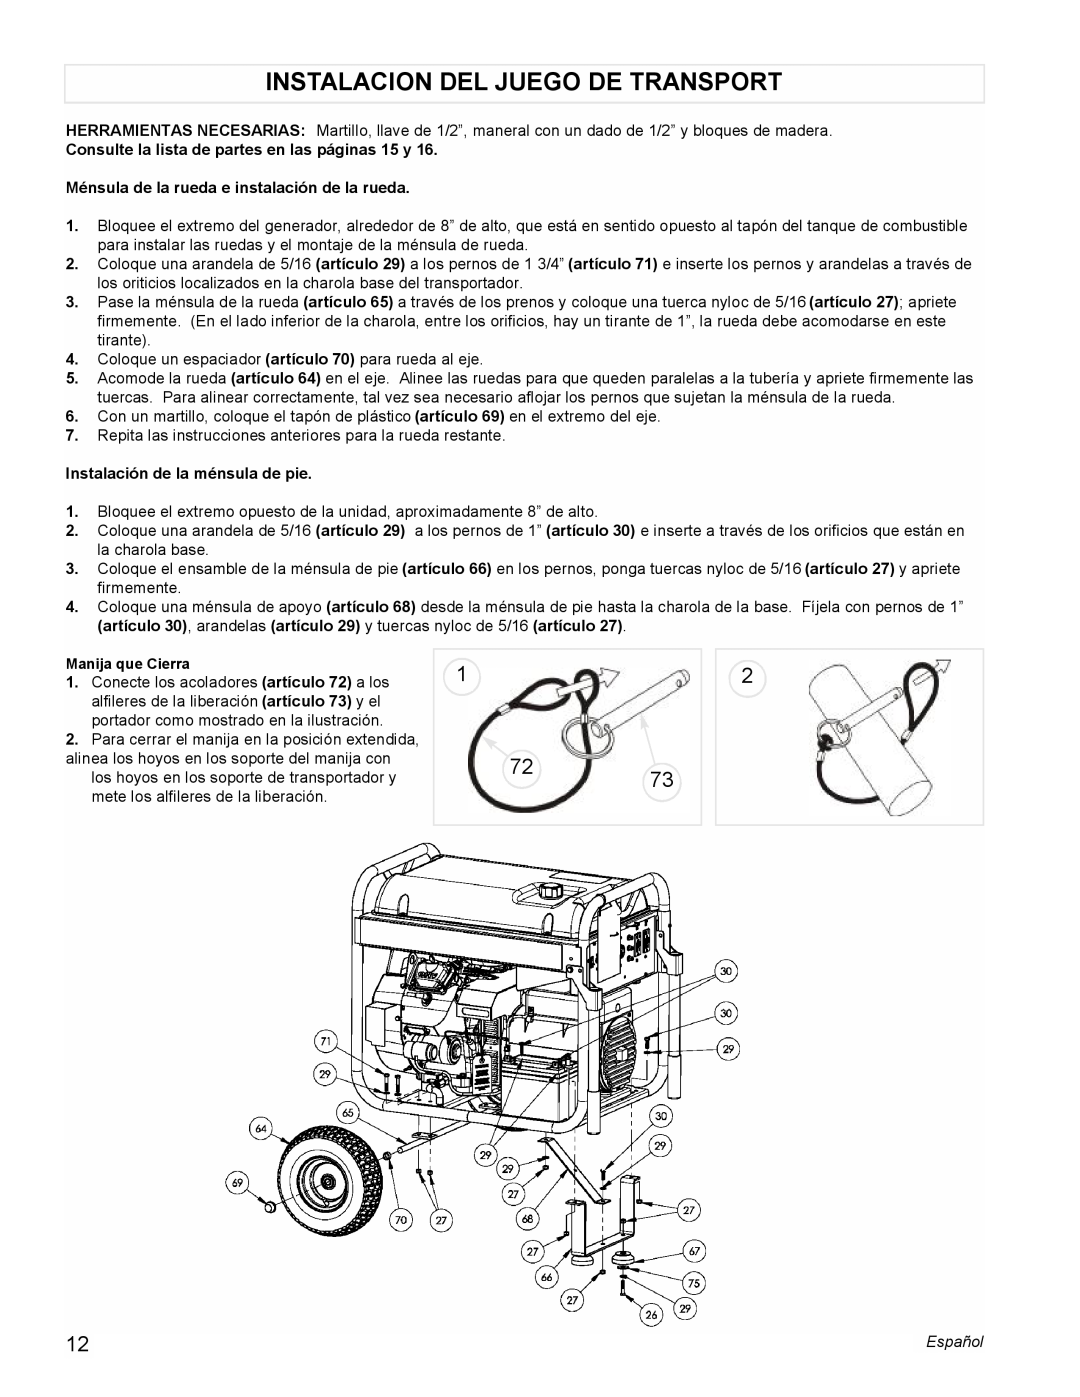 Powermate PM0601350 manual Instalacion Del Juego De Transport, Consulte la lista de partes en las páginas 15 y 